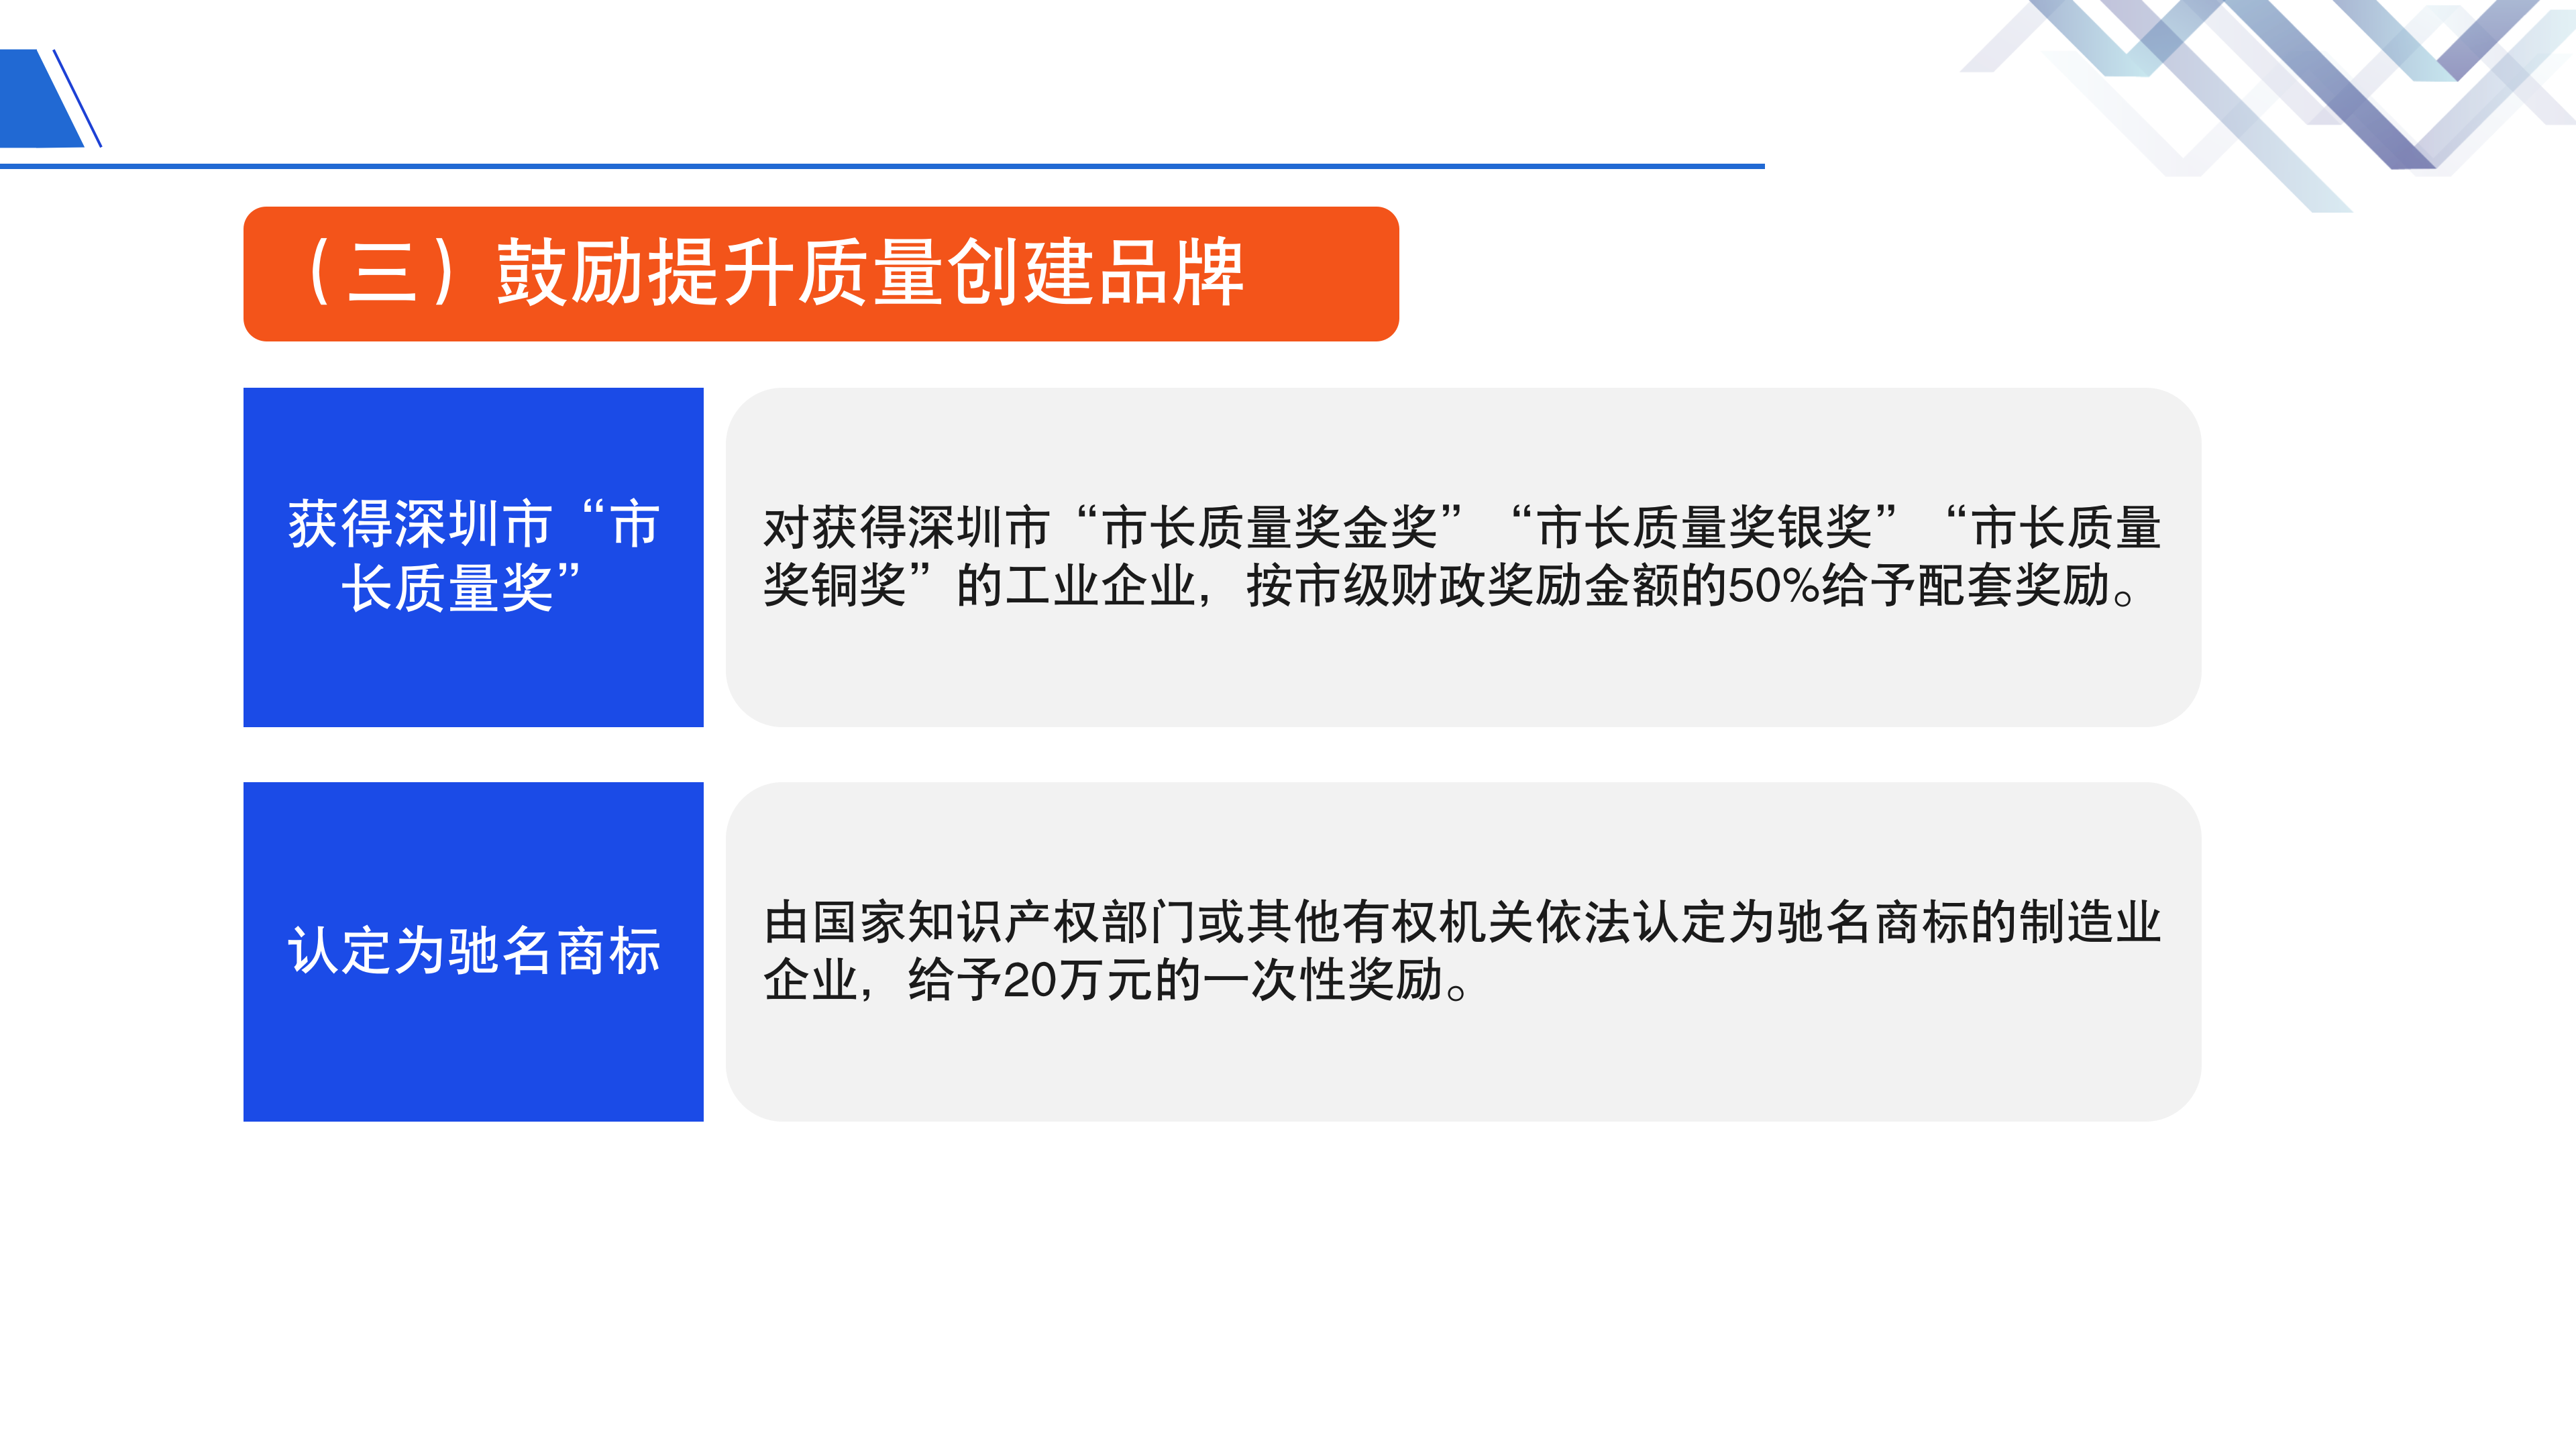 《深圳市大鹏新区关于促进制造业高质量发展的若干措施》政策解读_11.png